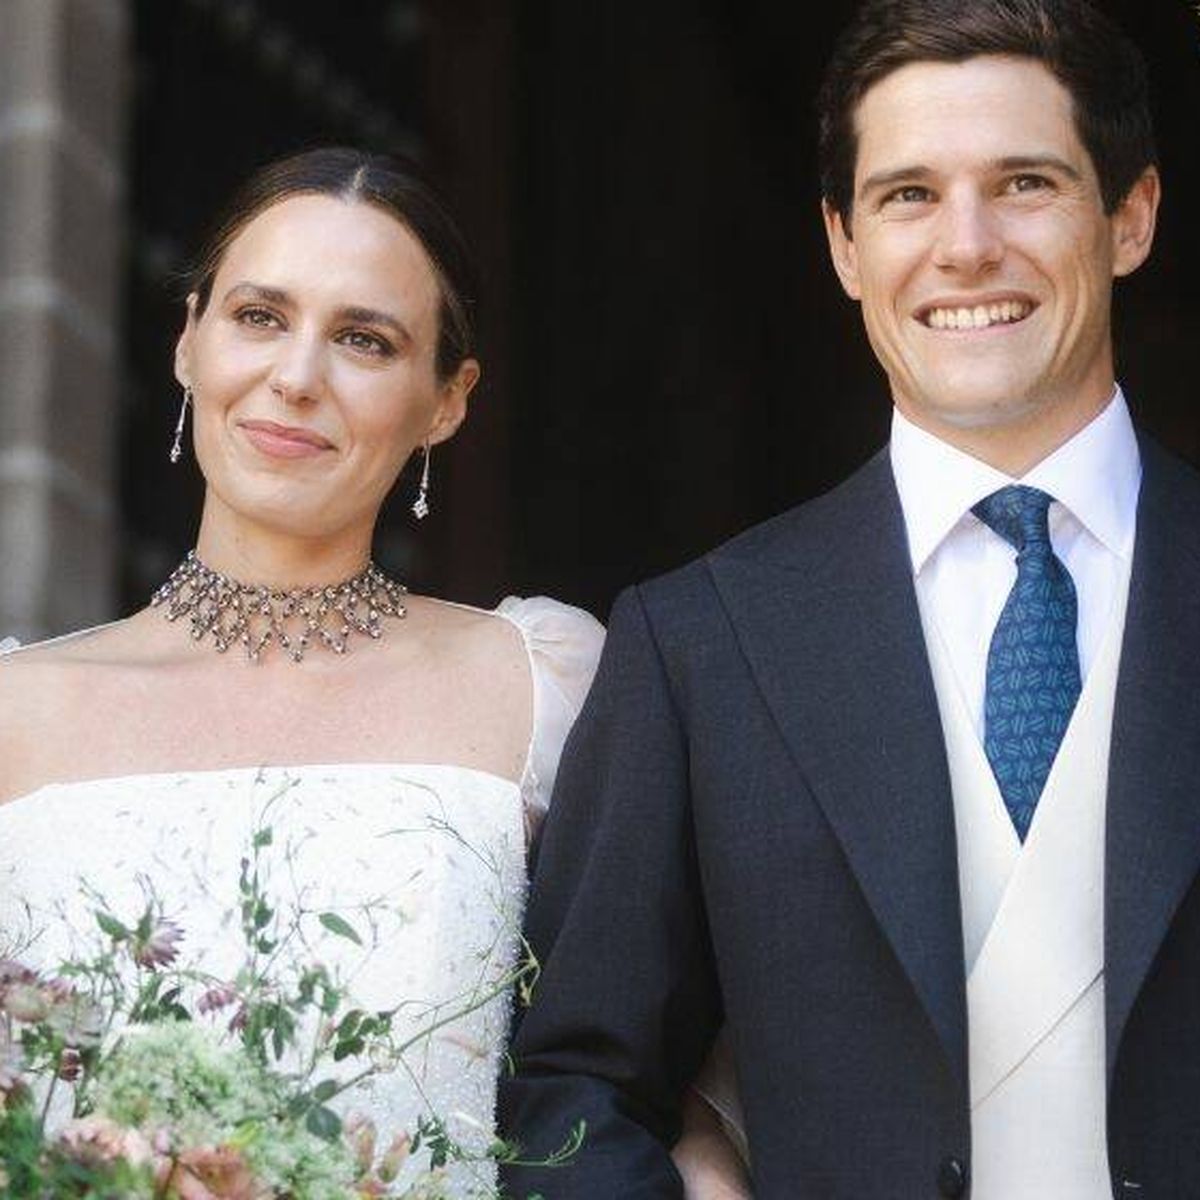 Las bodas más mediáticas del 2021: famosos que se han casado este año